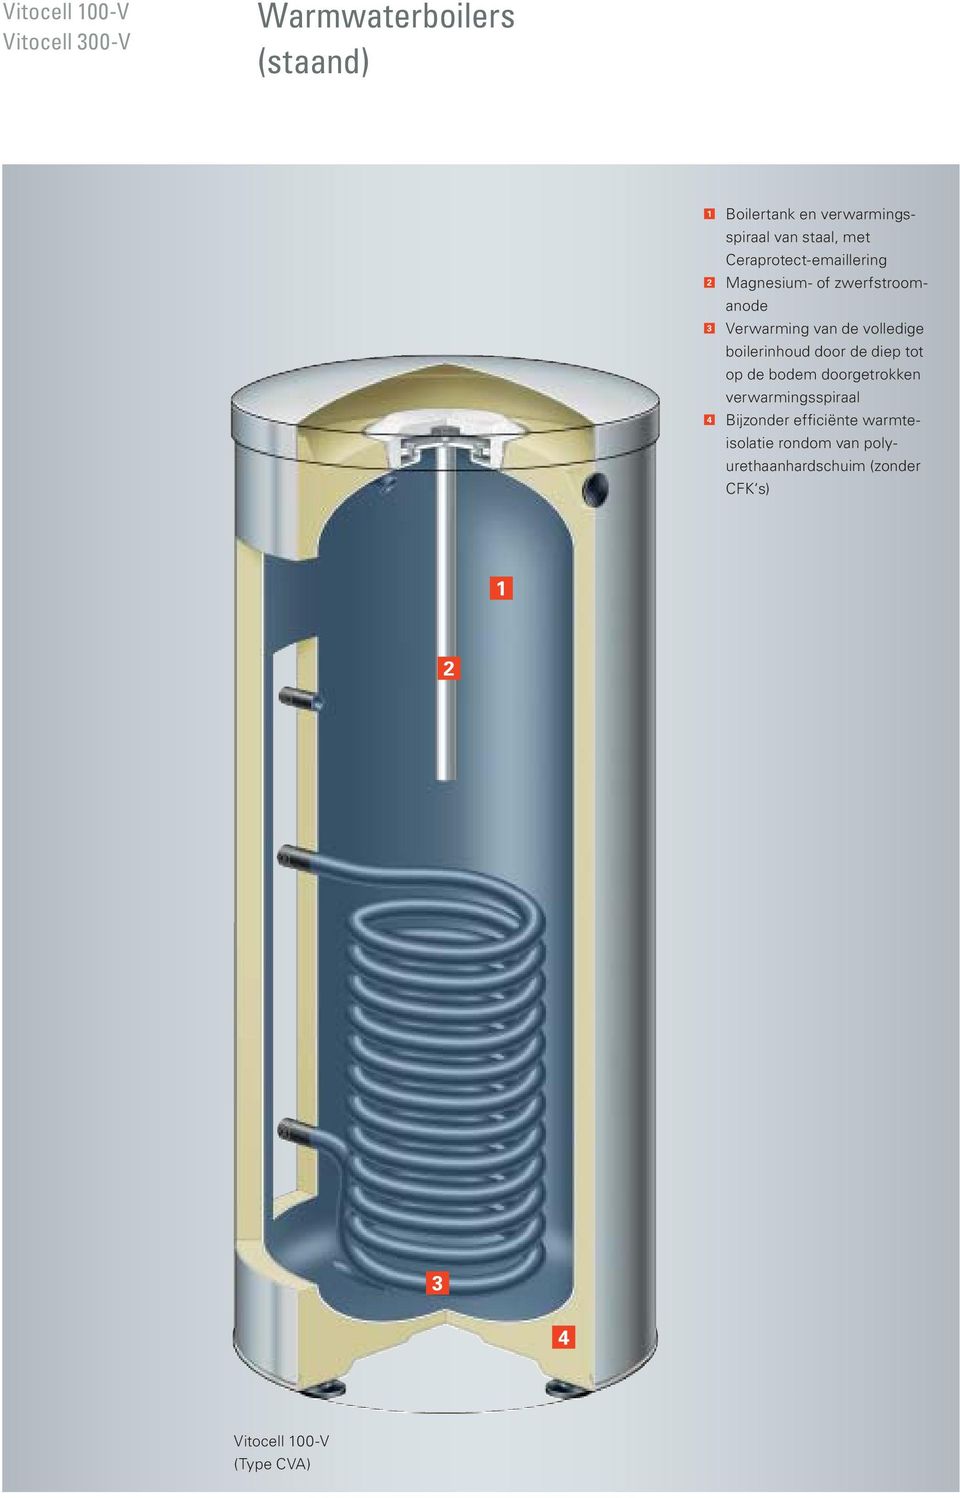 boilerinhoud door de diep tot op de bodem doorgetrokken verwarmingsspiraal 4 Bijzonder efficiënte